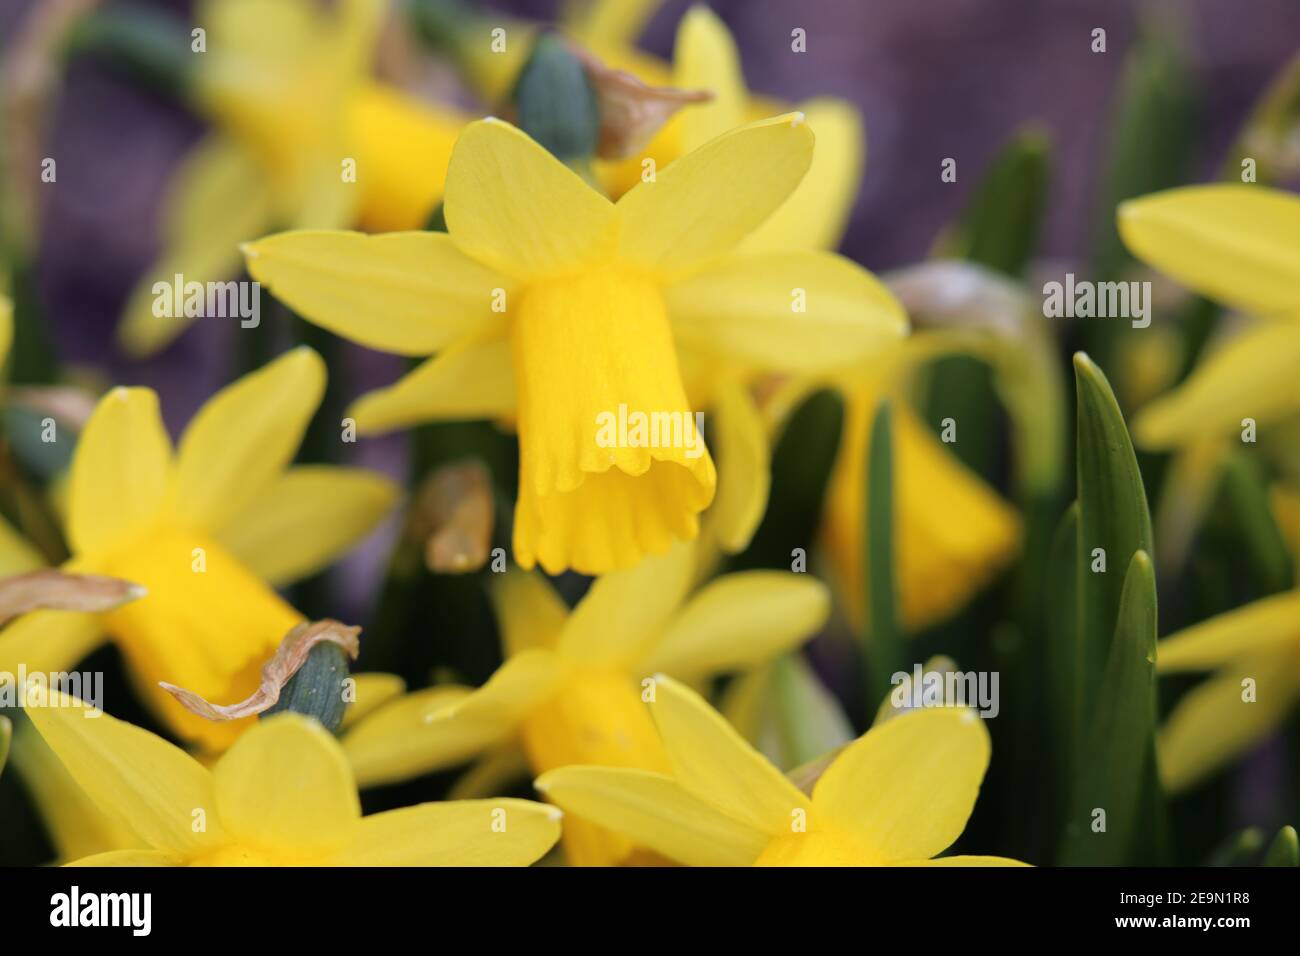 Jonquille jaune / narcisse fleurs en gros plan avec des feuilles vertes en arrière-plan. Les jonquilles sont des fleurs parfaites pour Pâques / printemps. Banque D'Images